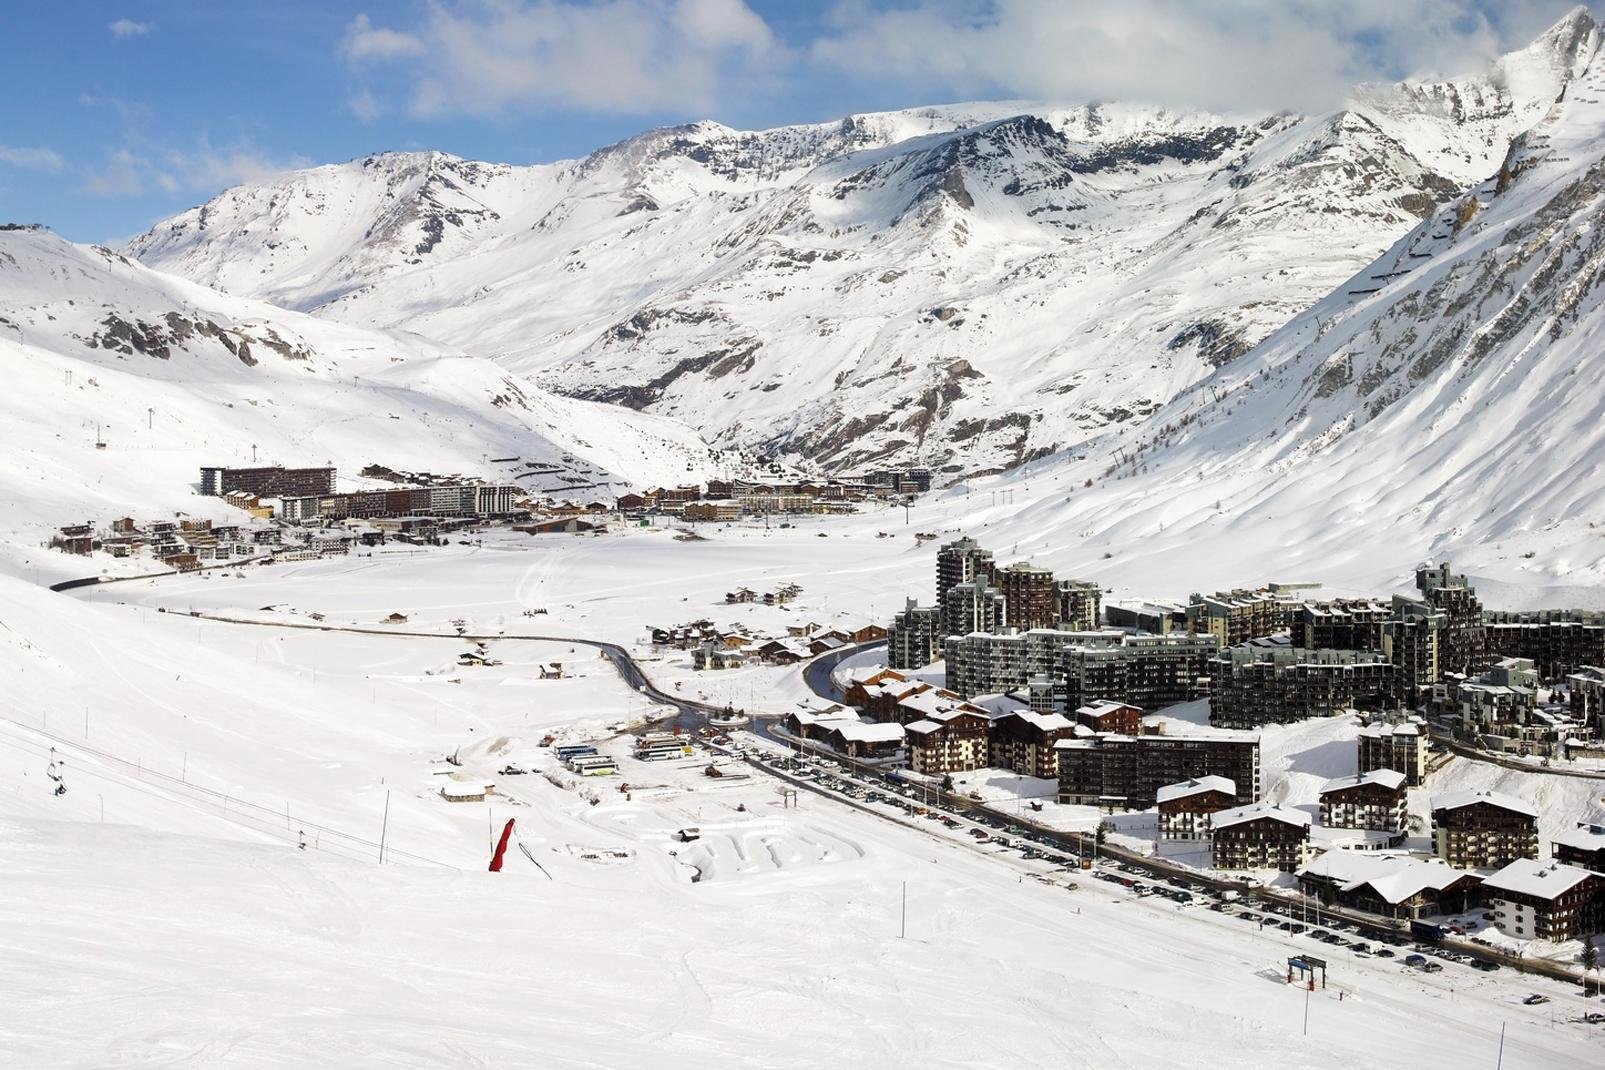 Installée à plus de 2000 mètres d'altitude,Tignes est devenue une station de ski en 1956. Aujourdh'hui, sa renommée internationale lui permet d'attirer en hiver et en été de nombreux touristes. 
Elle partage son domaine skiable avec Val d'Isère, appelé communément « l'espace Killy ». On retrouve deux sites distincts : Tignes Le Lac et Tignes Val Claret.
Tignes, c'est le glacier de la grande Motte, ...